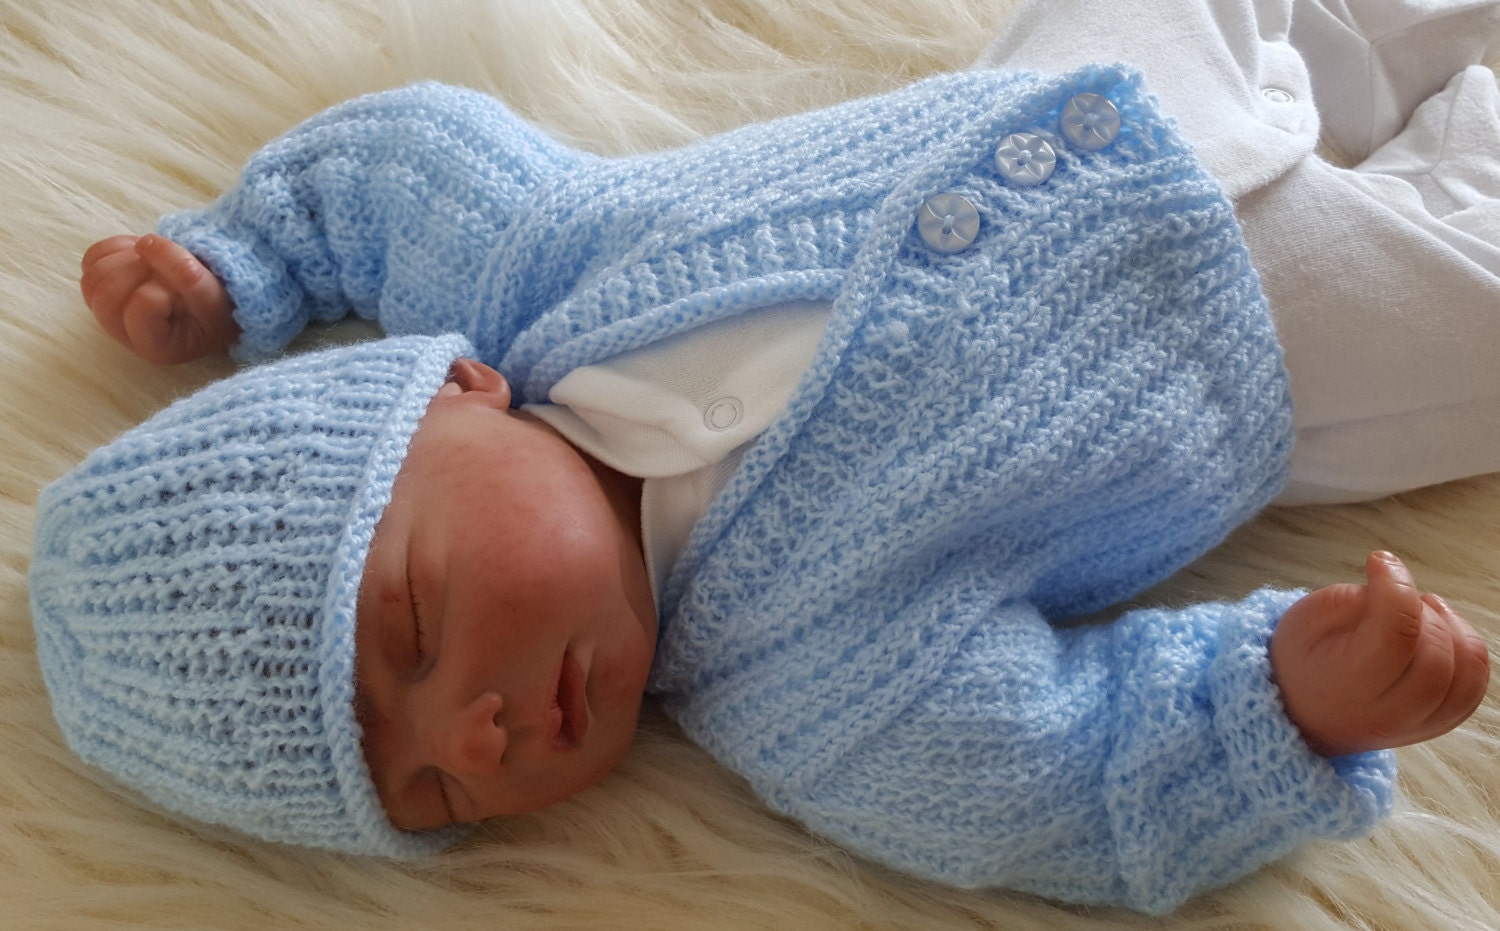 easy baby cardigan knitting pattern free uk online